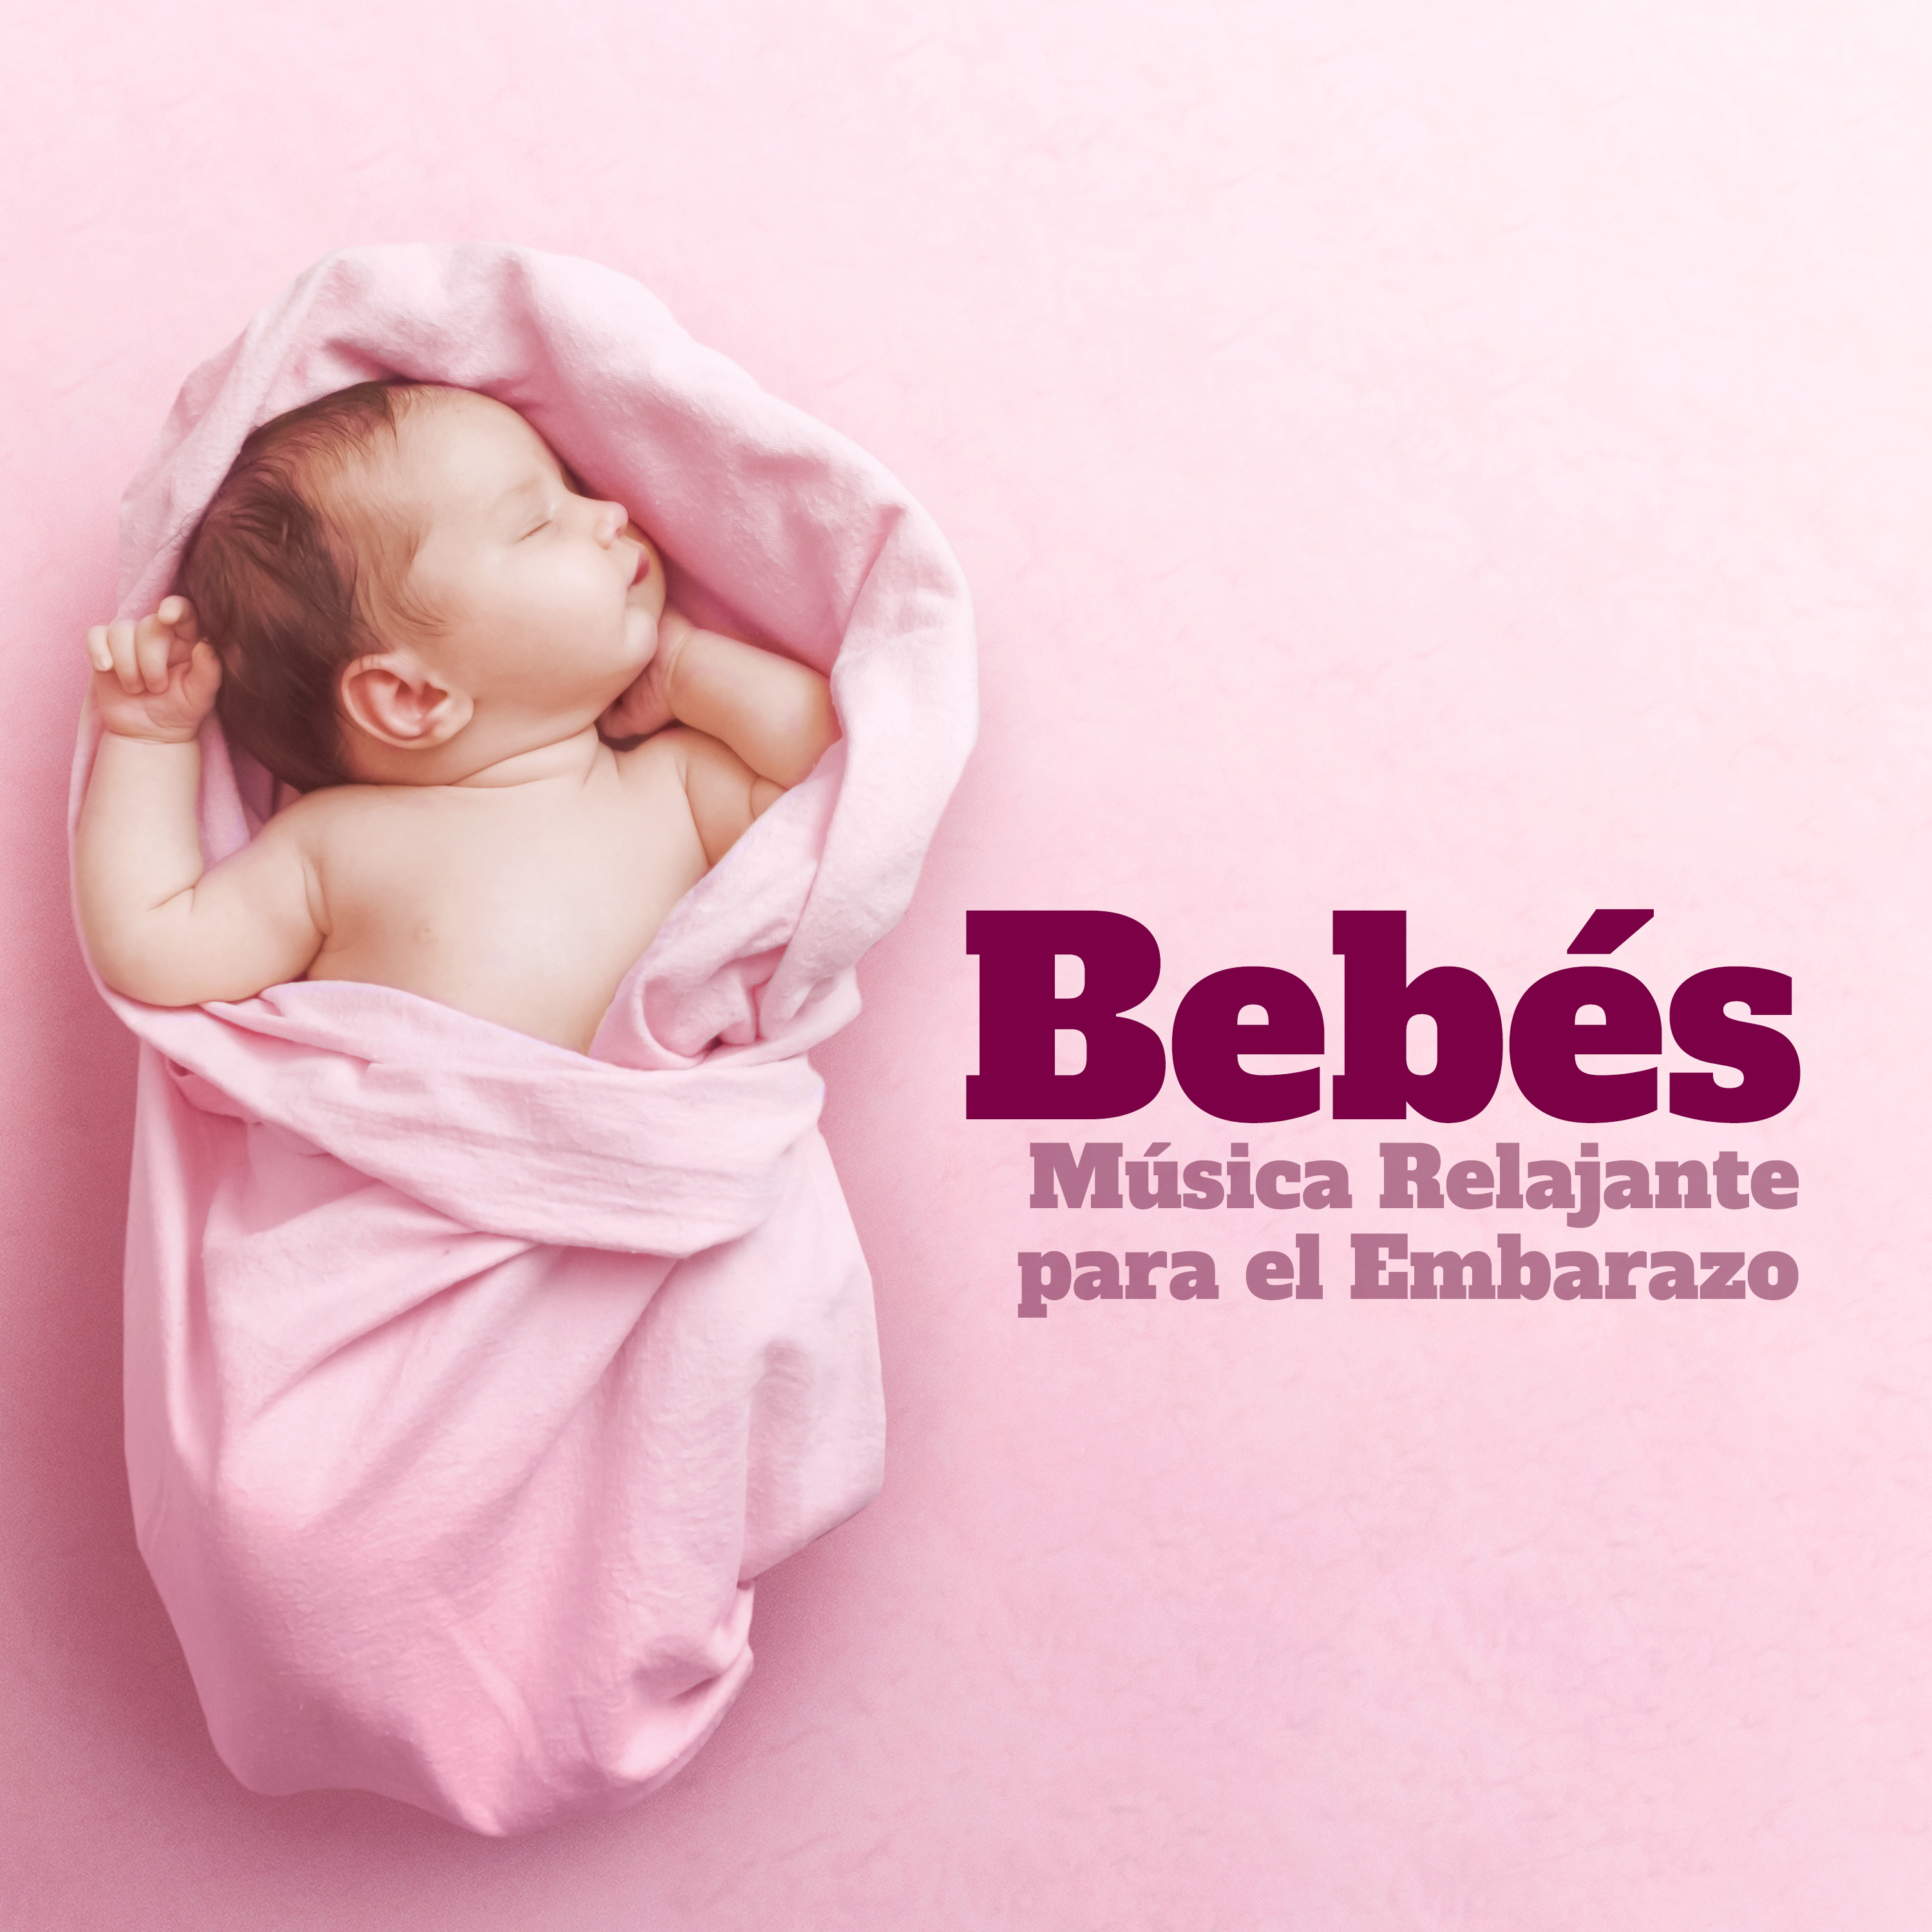 Bebés - Música Relajante para el Embarazo